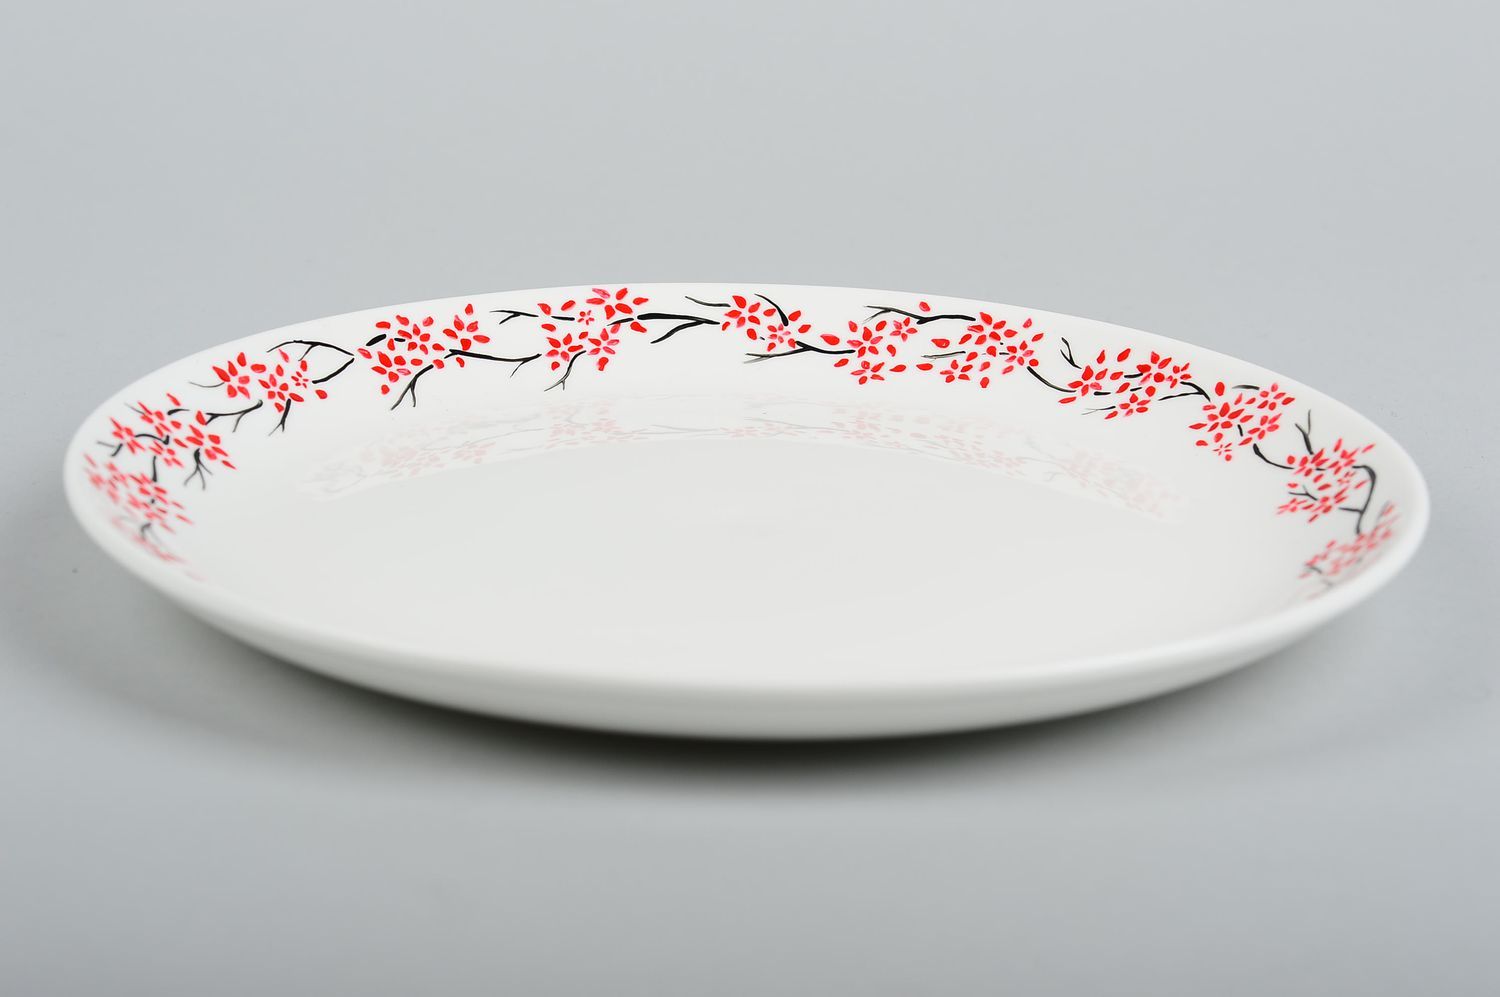 White unusual plate ceramic stylish accessories decorative kitchenware photo 3